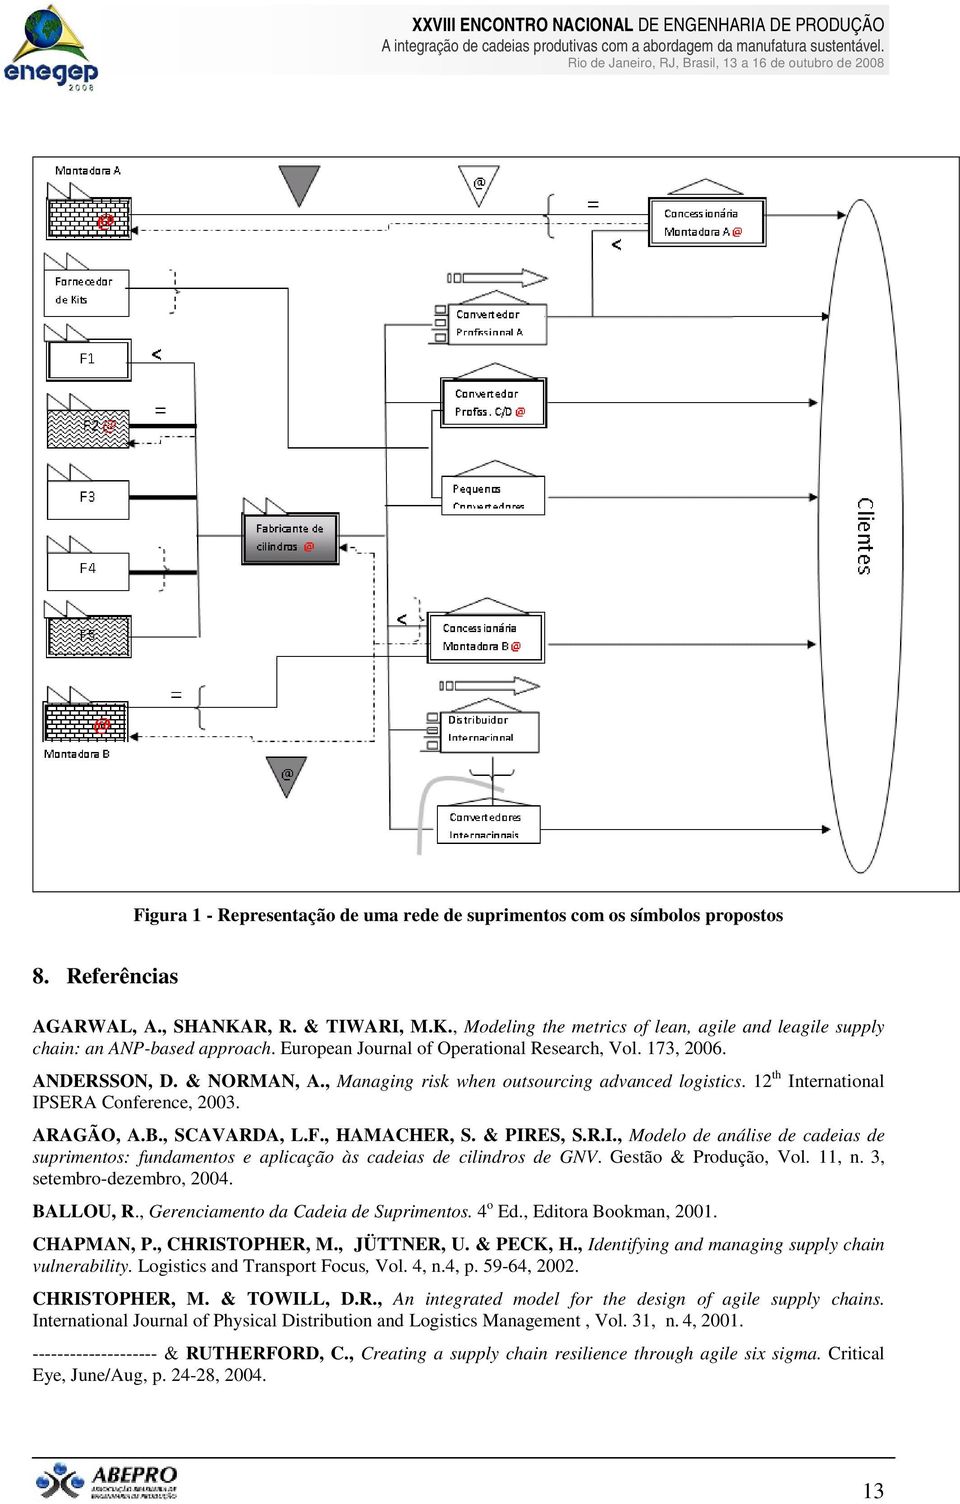 , SCAVARDA, L.F., HAMACHER, S. & PIRES, S.R.I., Modelo de análise de cadeias de suprimentos: fundamentos e aplicação às cadeias de cilindros de GNV. Gestão & Produção, Vol. 11, n.